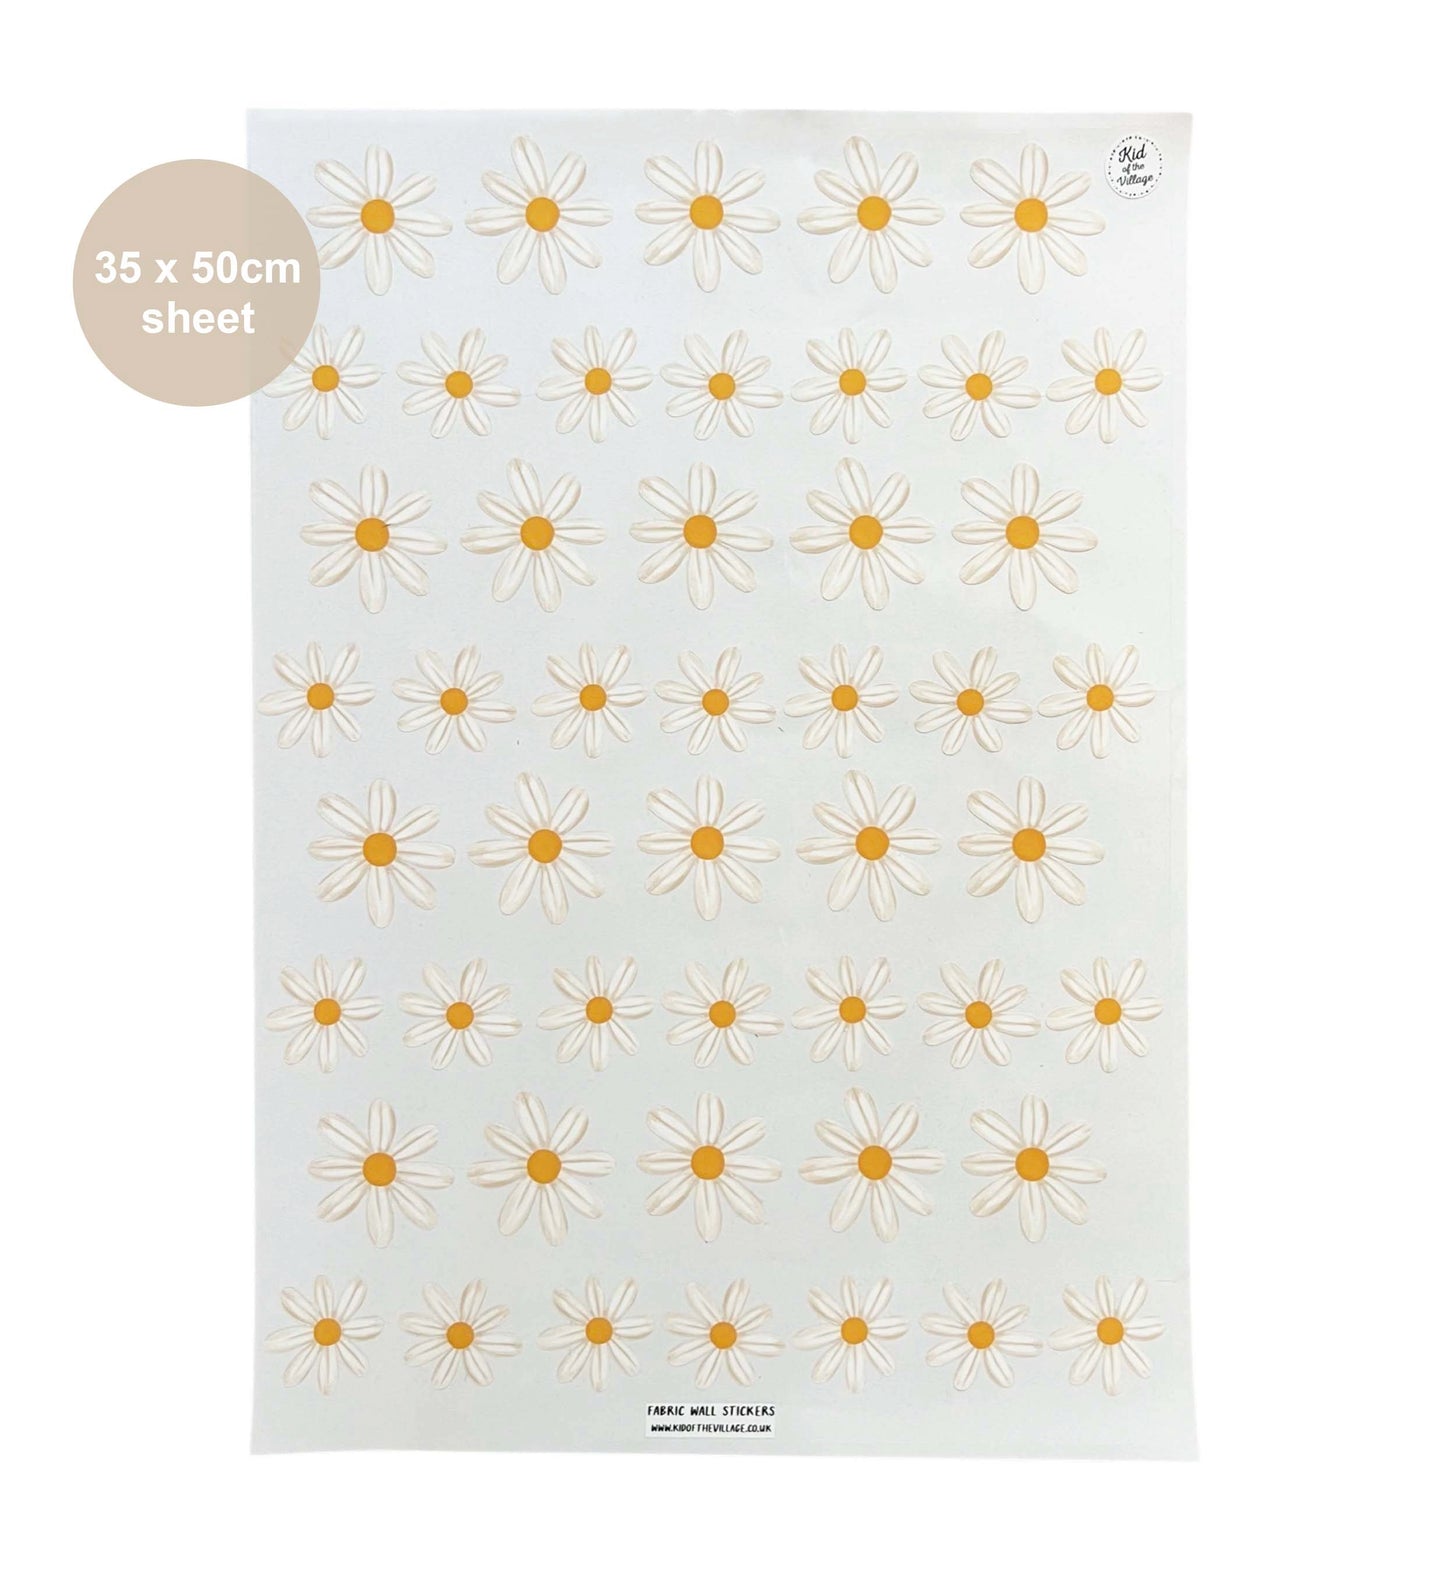 Daisy / Fabric Wall Stickers